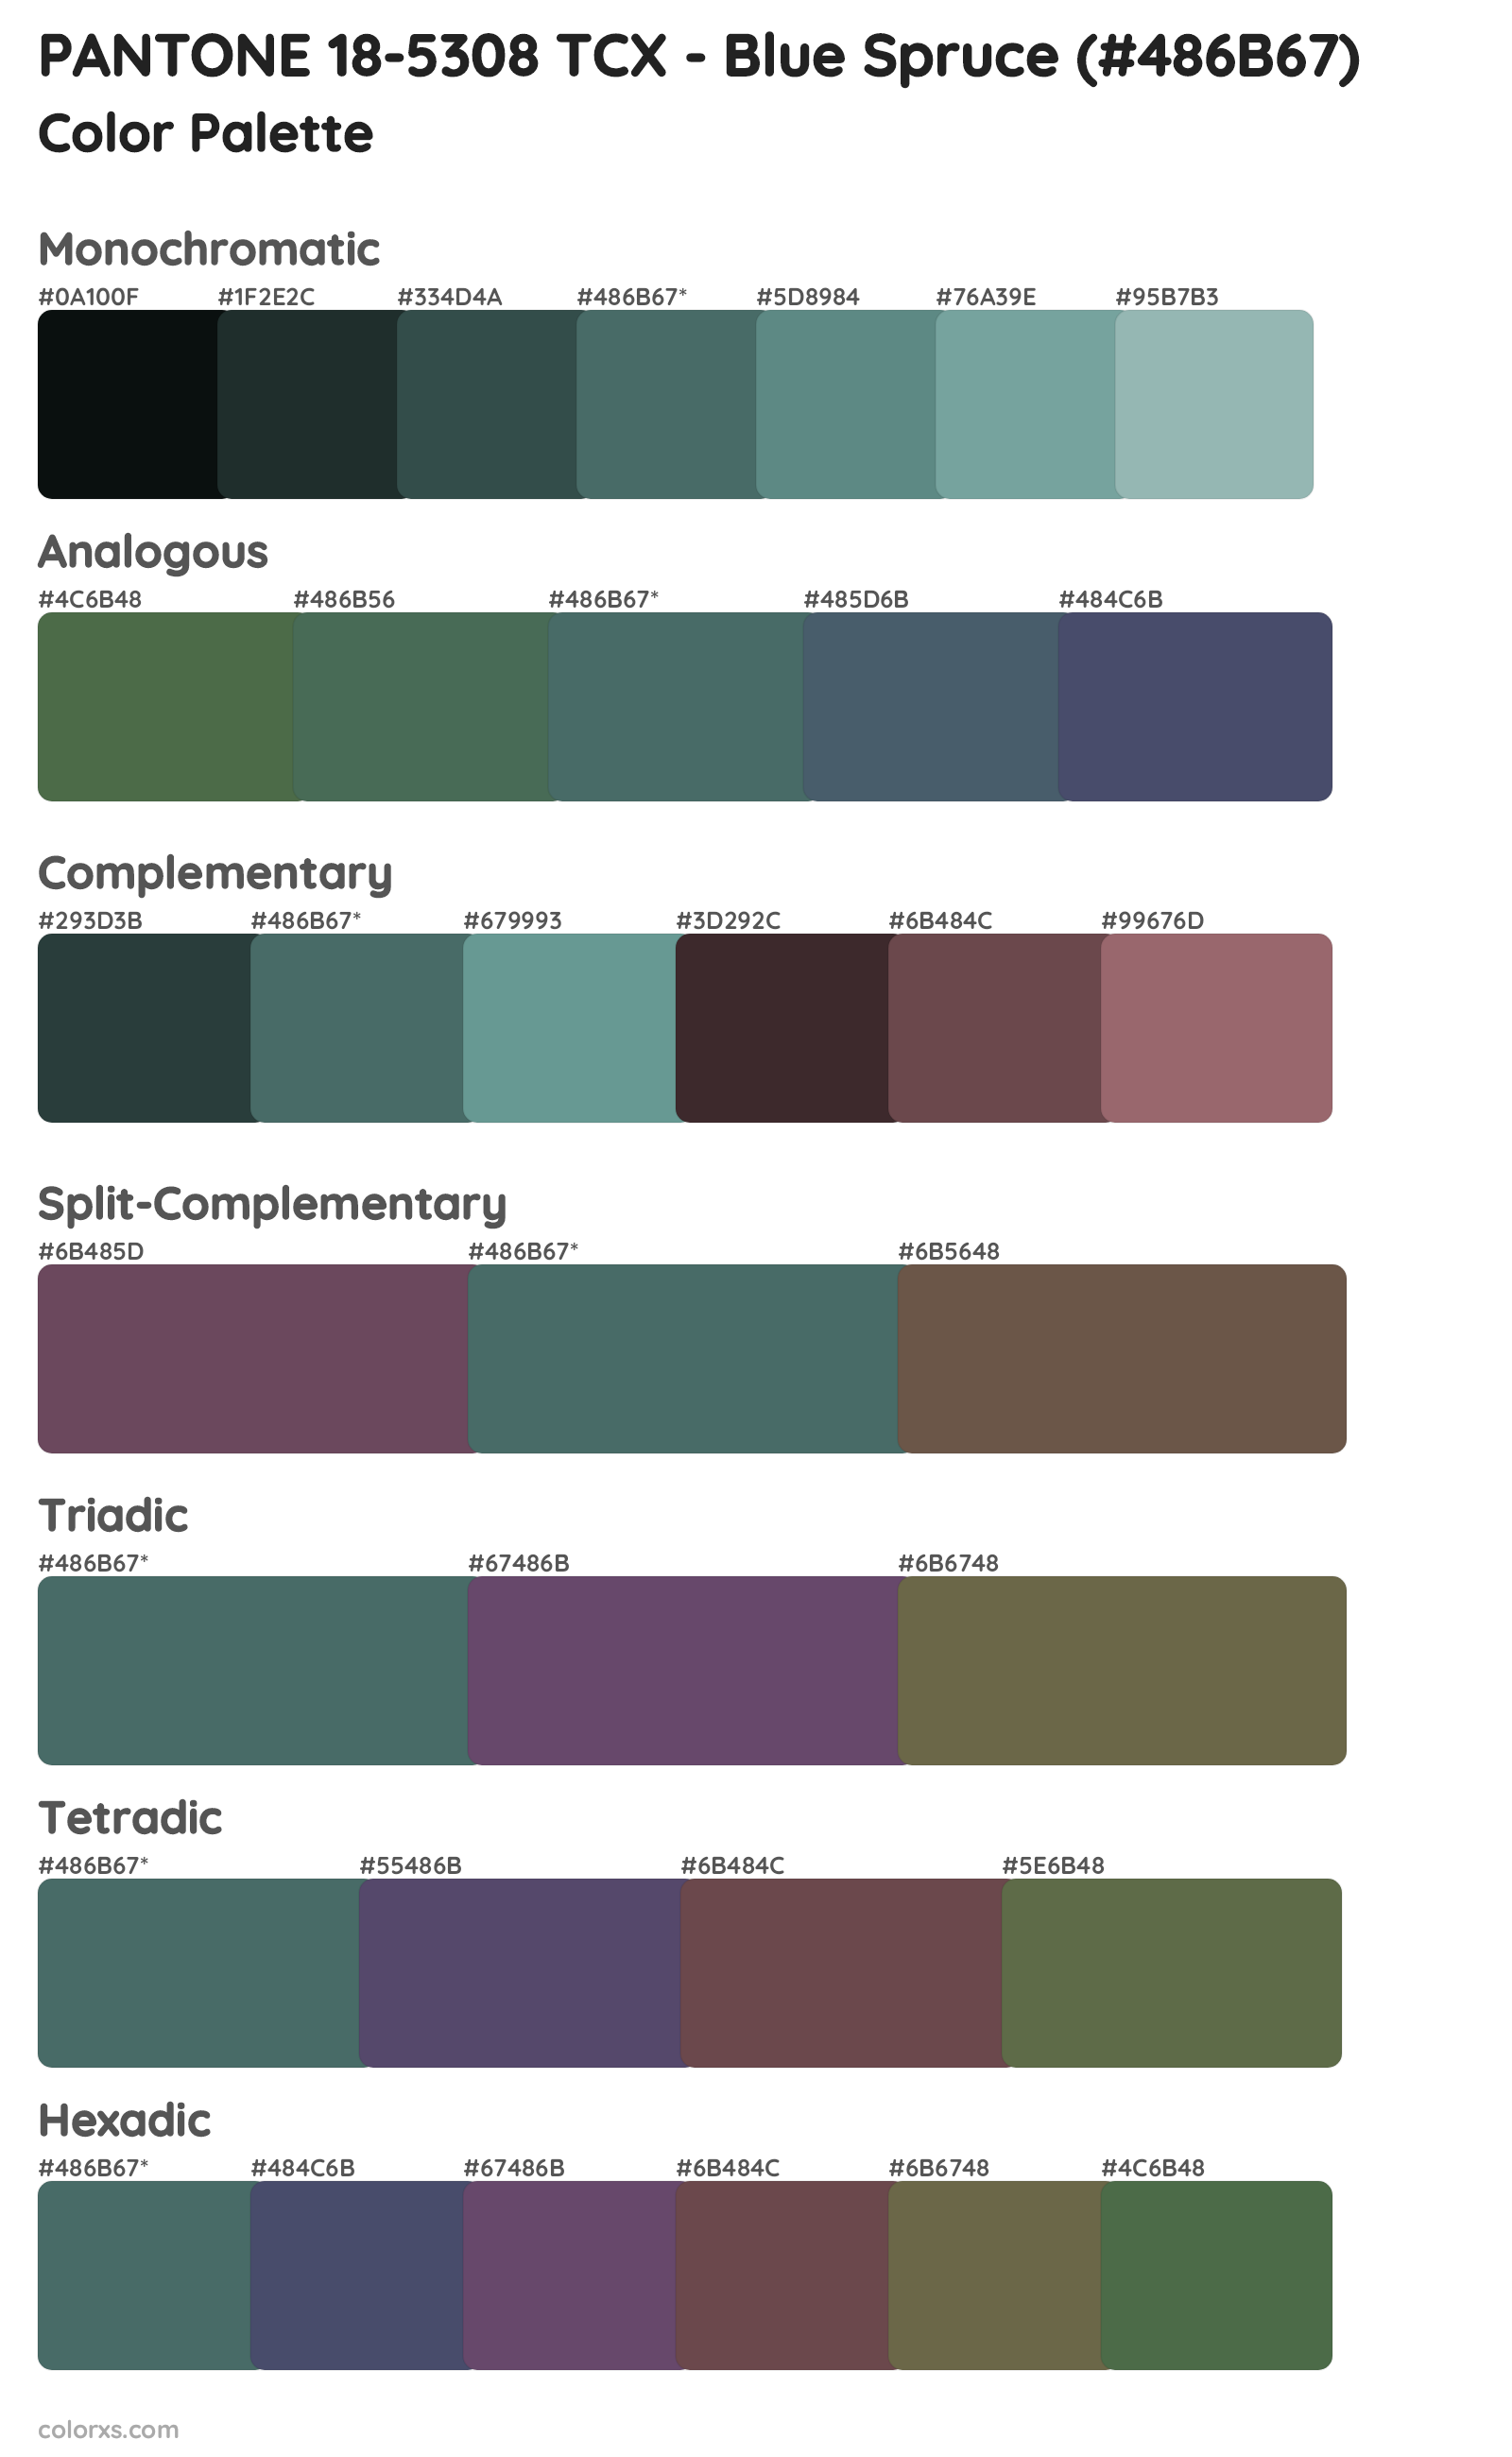 PANTONE 18-5308 TCX - Blue Spruce Color Scheme Palettes